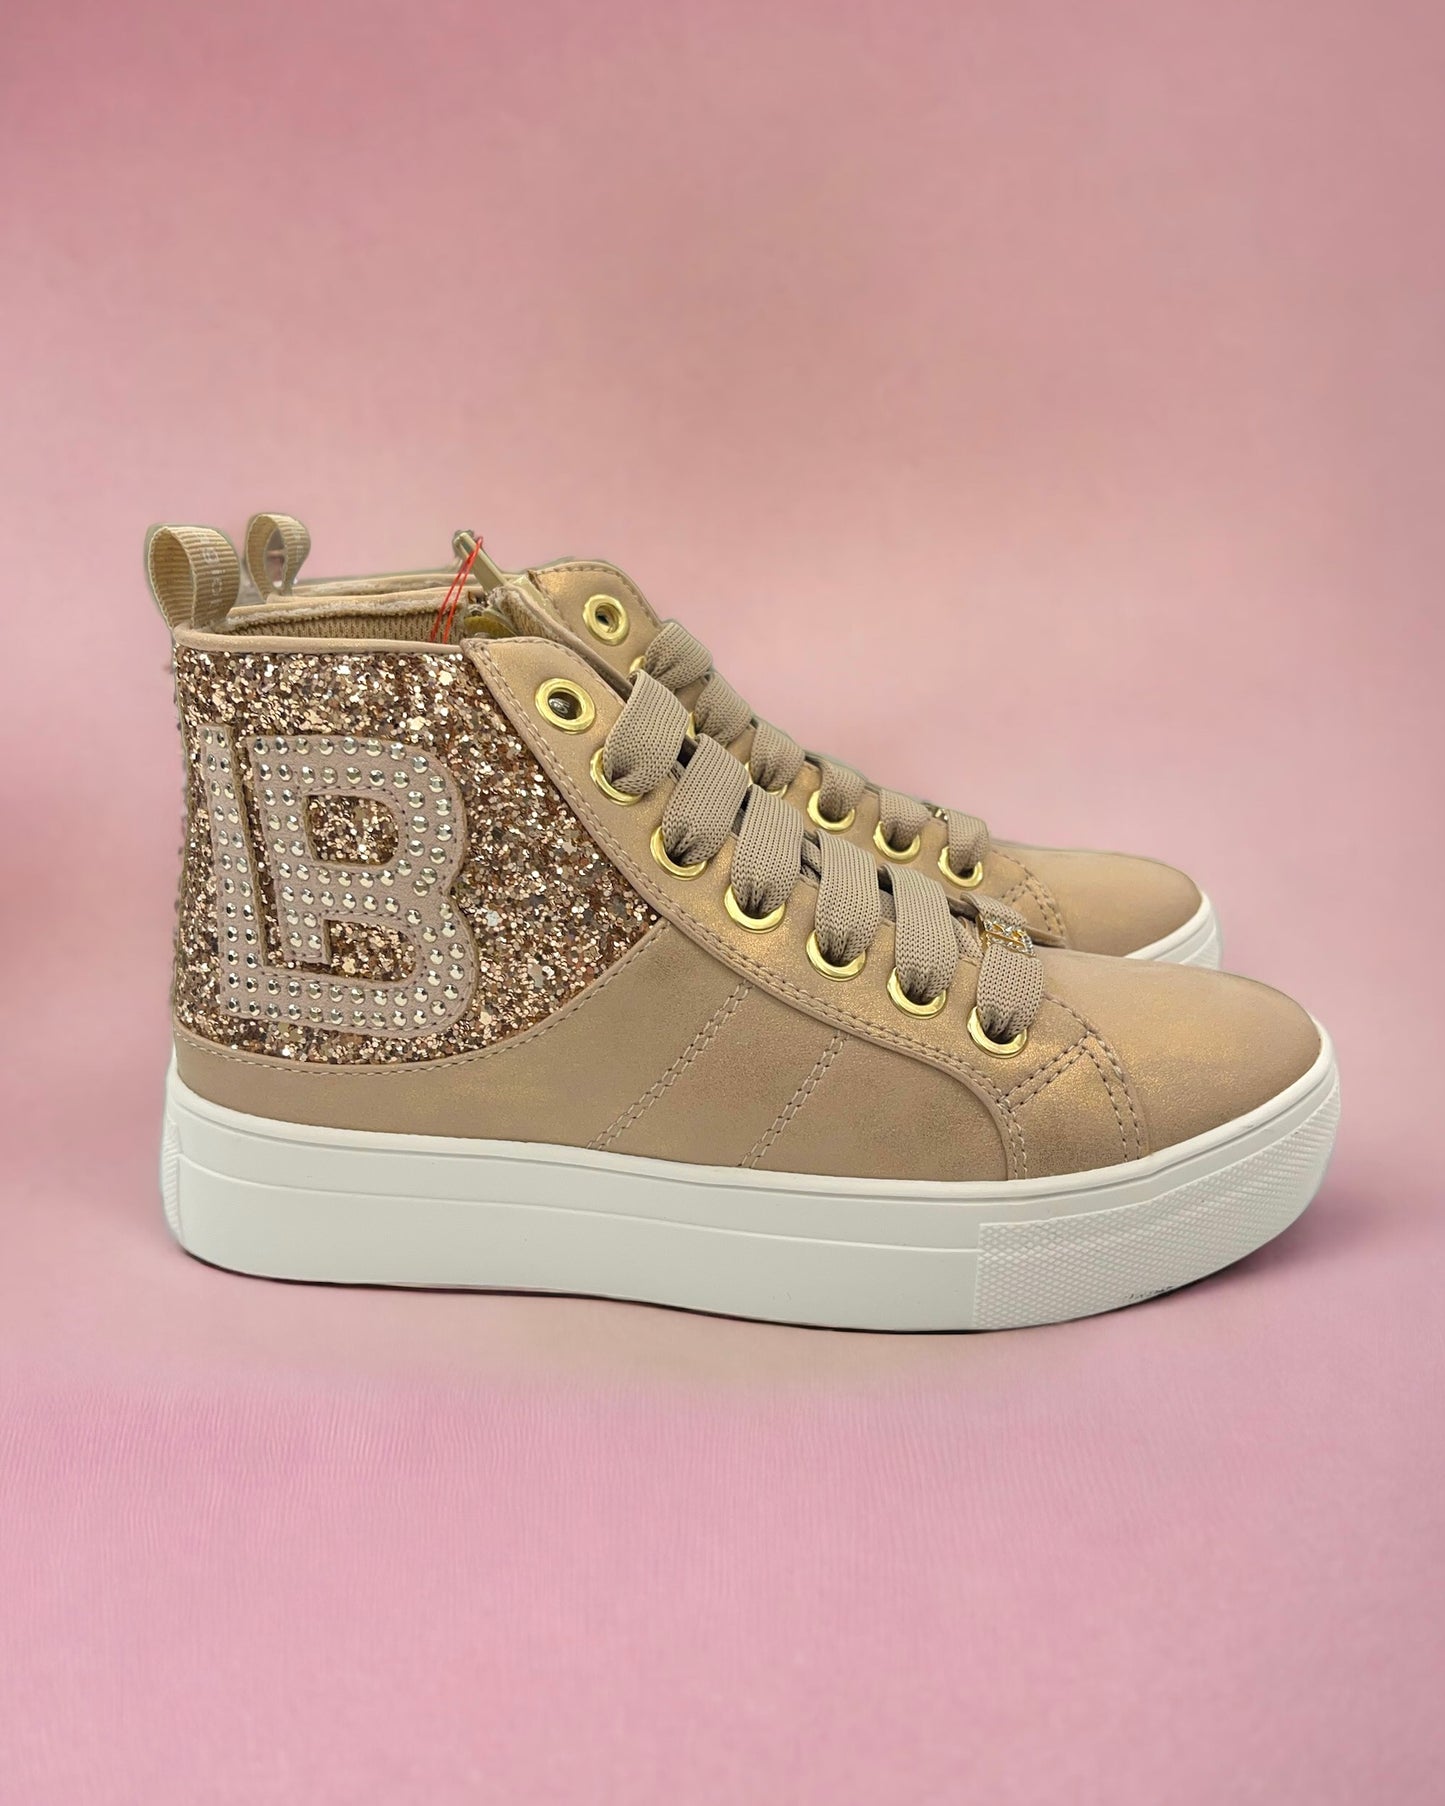 LAURA BIAGIOTTI LOVE - Sneakers dorate con maxi logo e brillantini sul lato